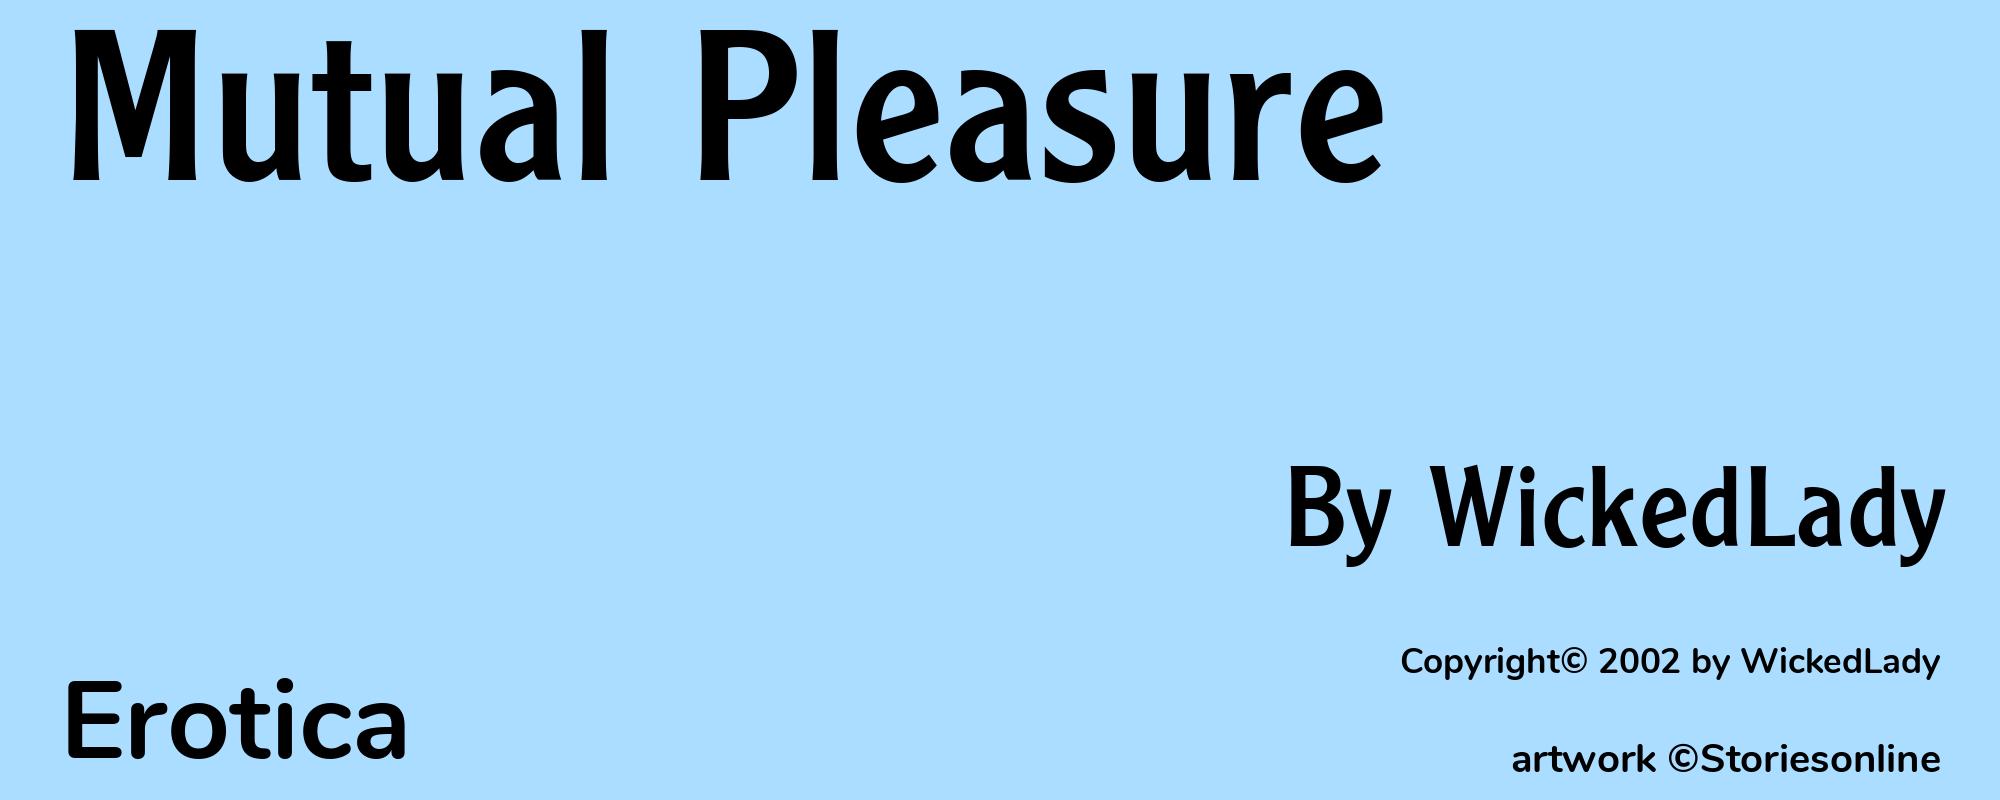 Mutual Pleasure - Cover